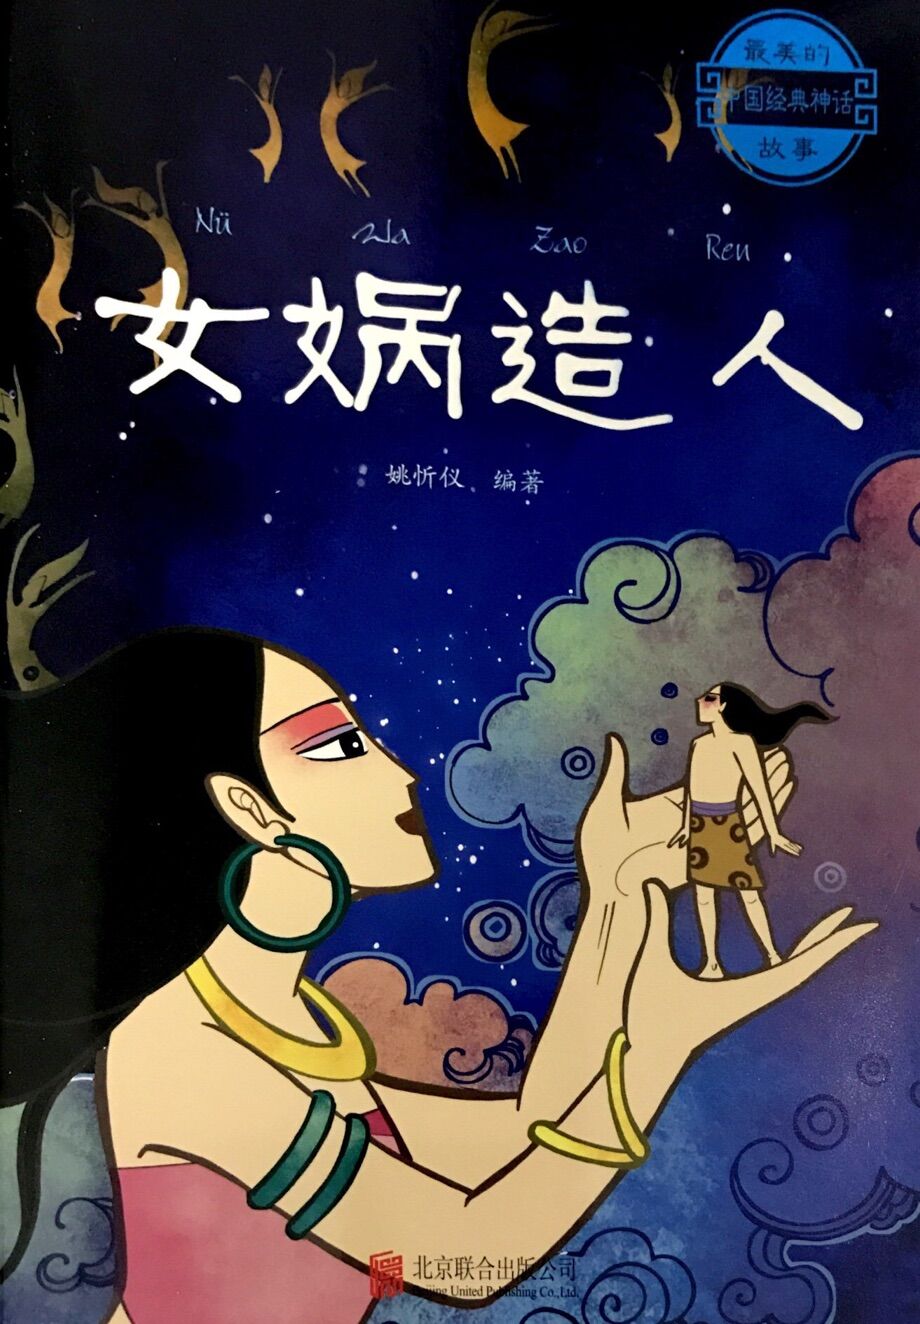 最美的中国经典神话故事:女娲造人 | 博鸟绘本-绘本借阅,往返包邮